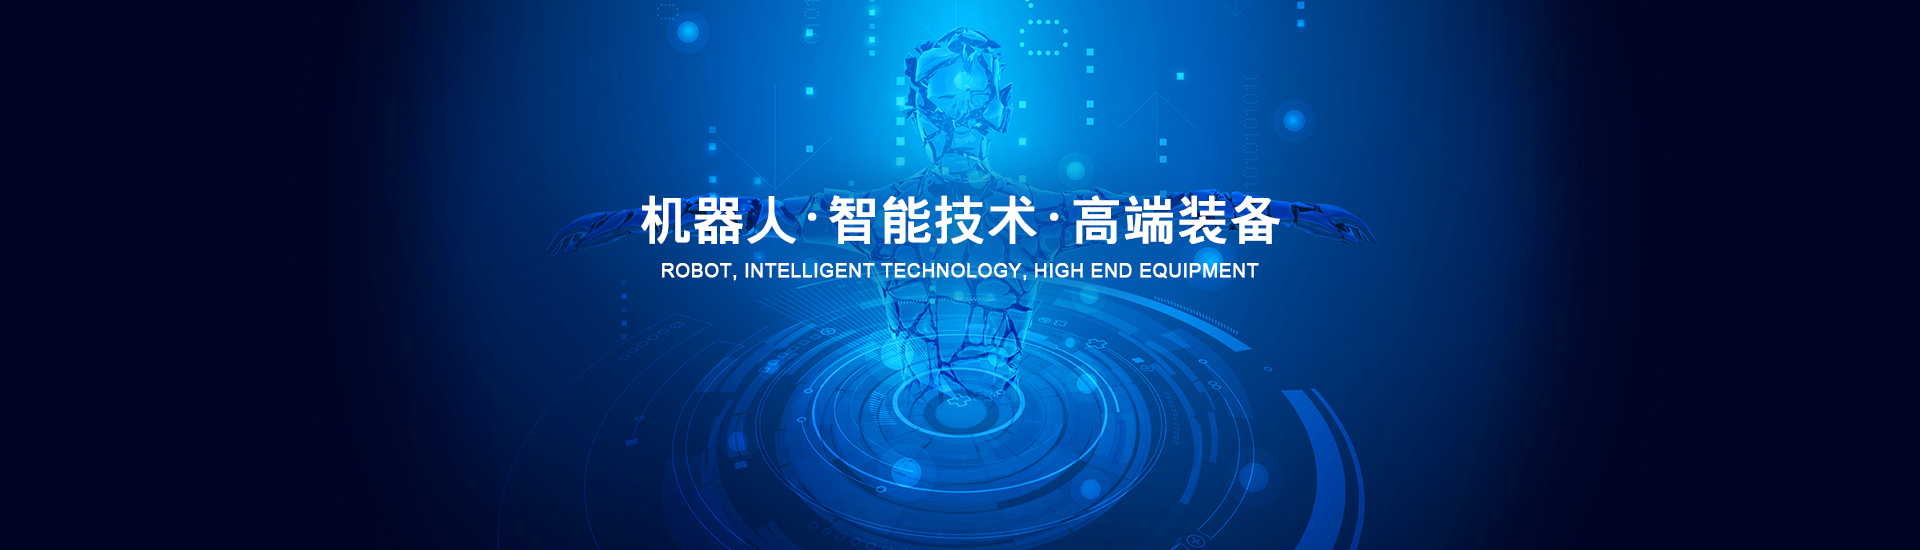 广州丰桥自动化科技有限公司 